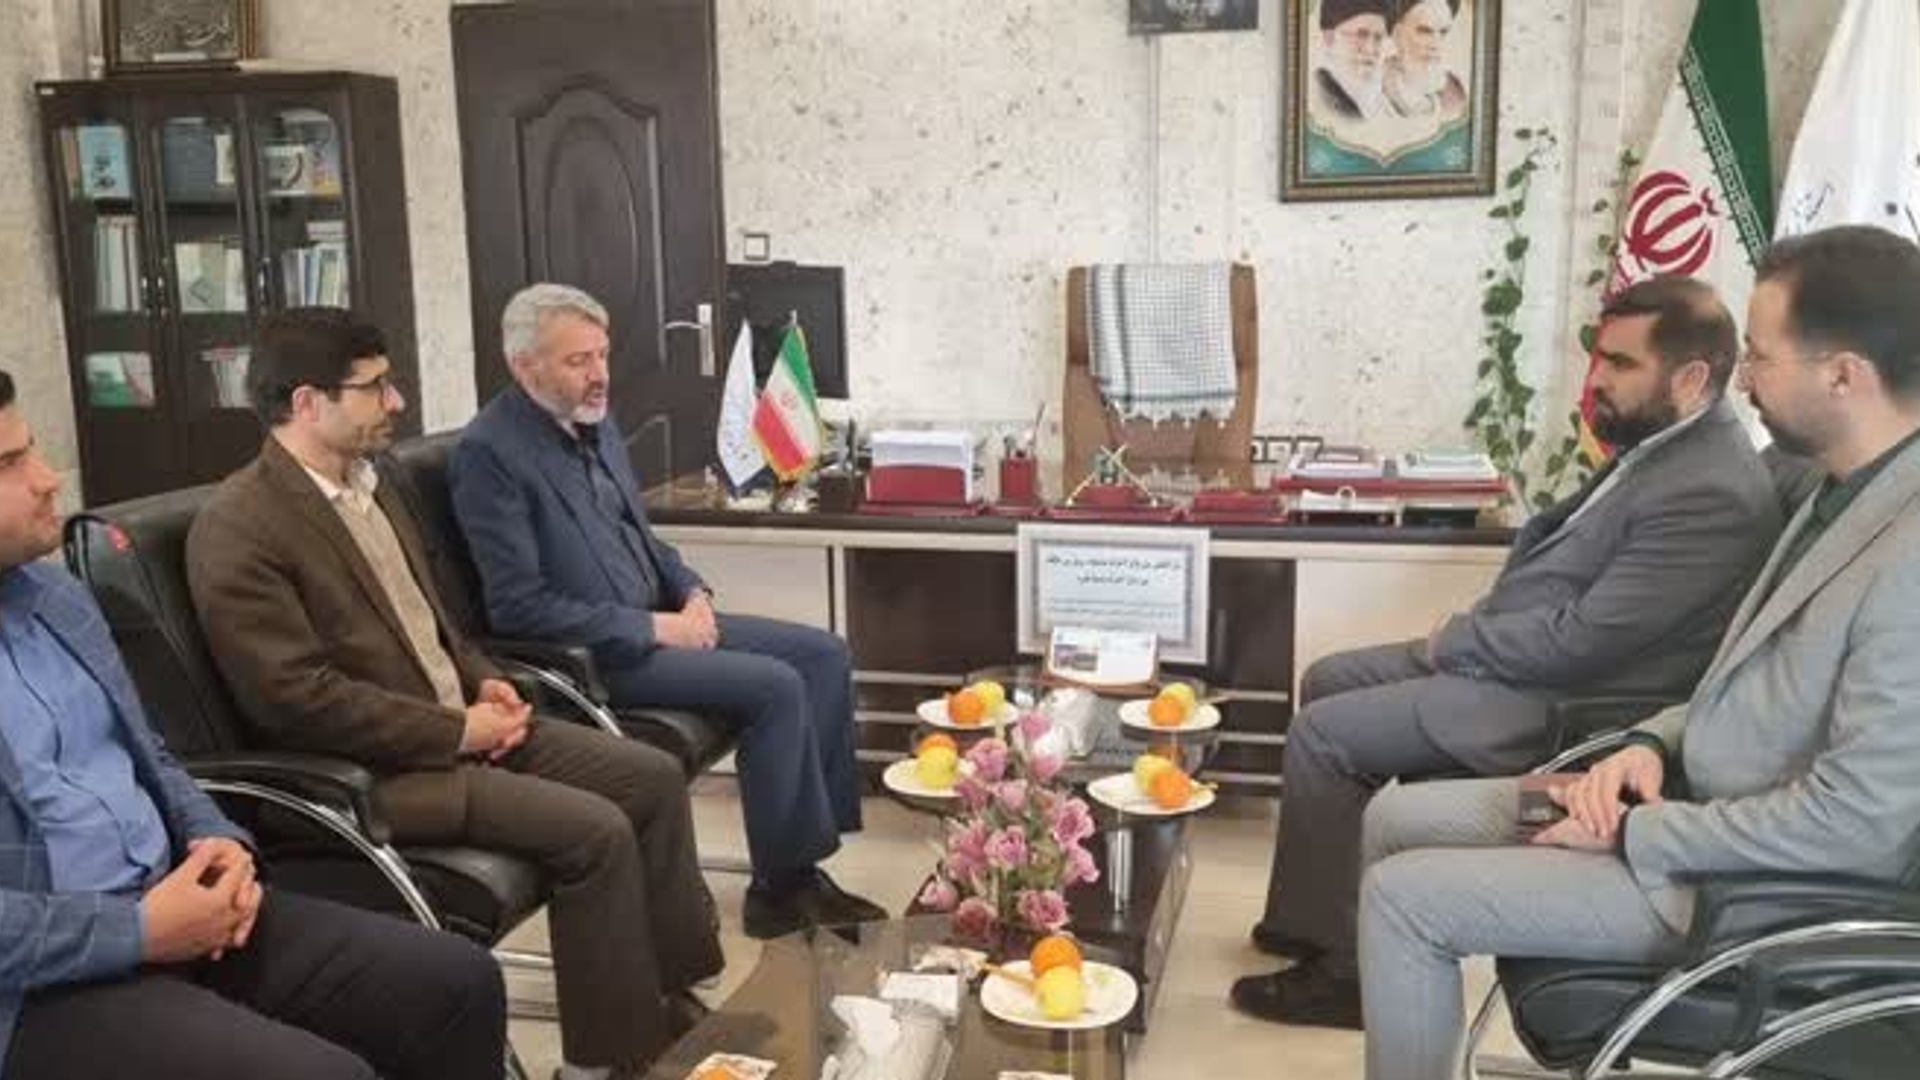 حسین مولوی مدیرکل آموزش و پرورش استان با آقازیارتی فرماندار شهرستان فراهان، دیدار و گفتگو نمودند.